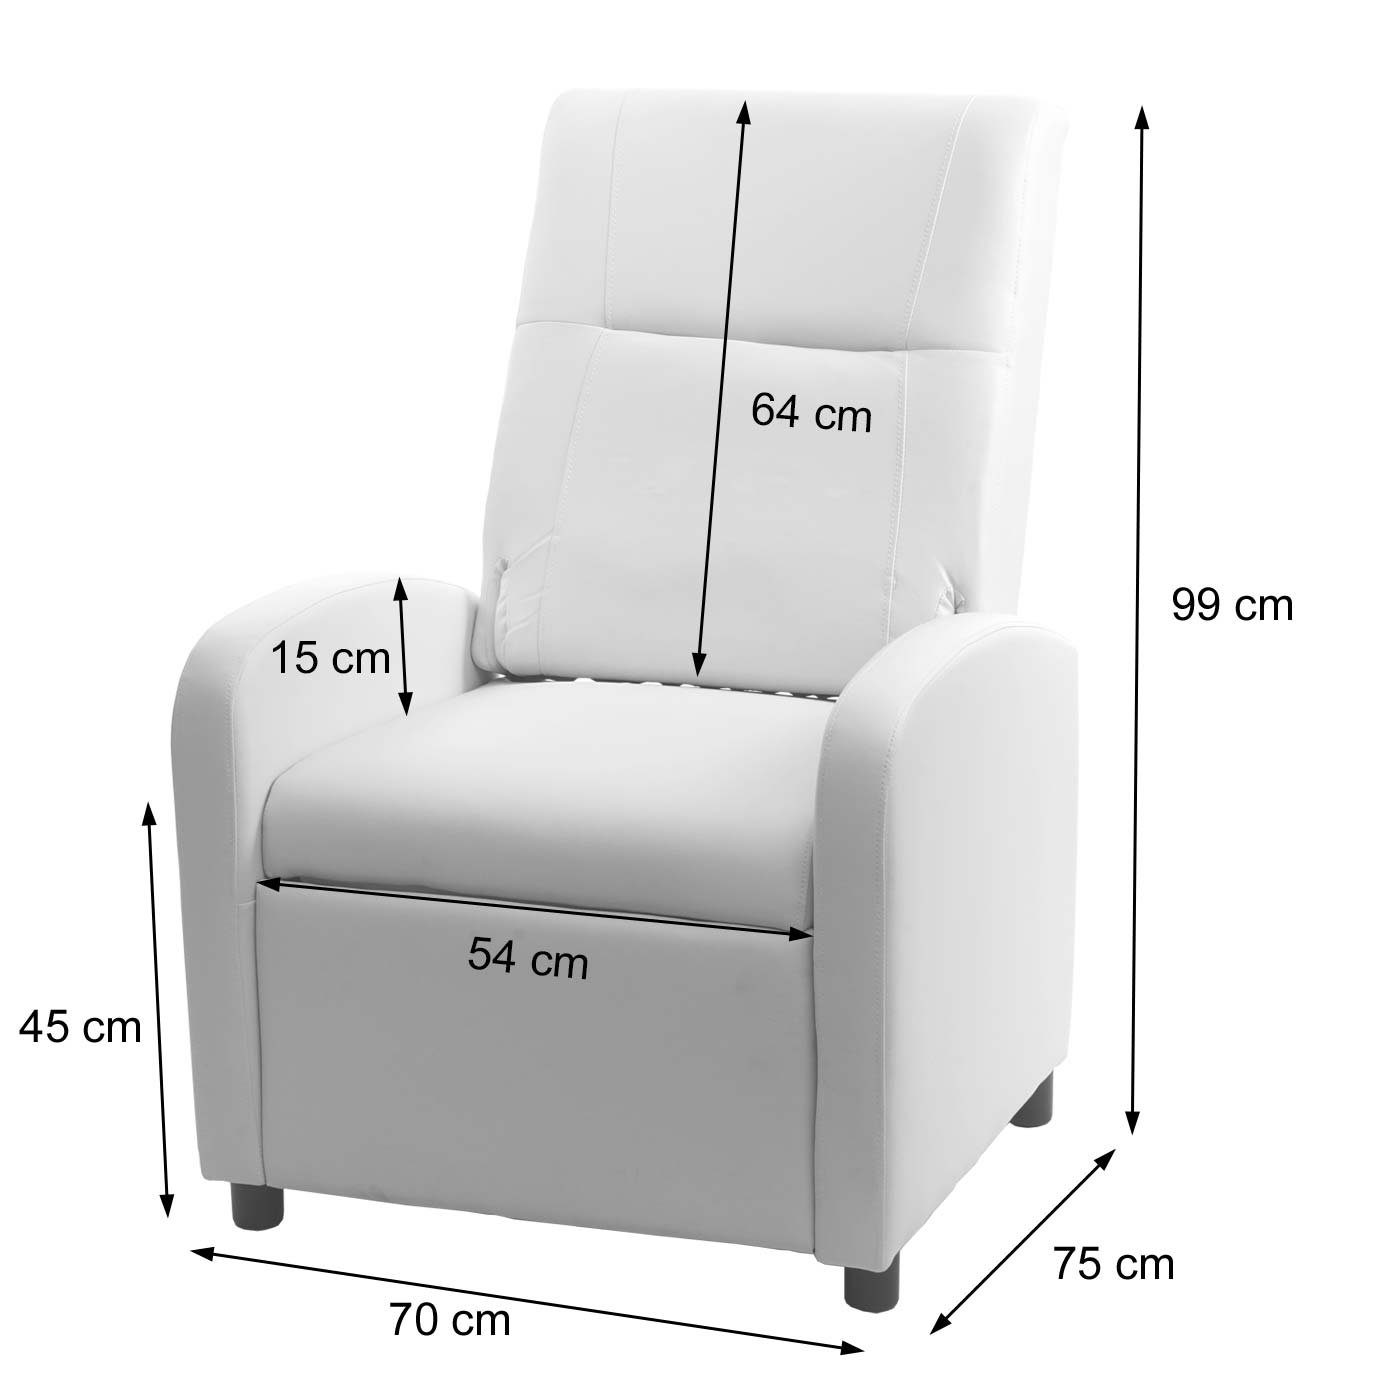 MCW TV-Sessel MCW-H18, Synchrone der Verstellung der Rücken- Verstellung und Rückenlehne Fußlehne, Klappbare Rücken- Fußlehne, Synchrone weiß und